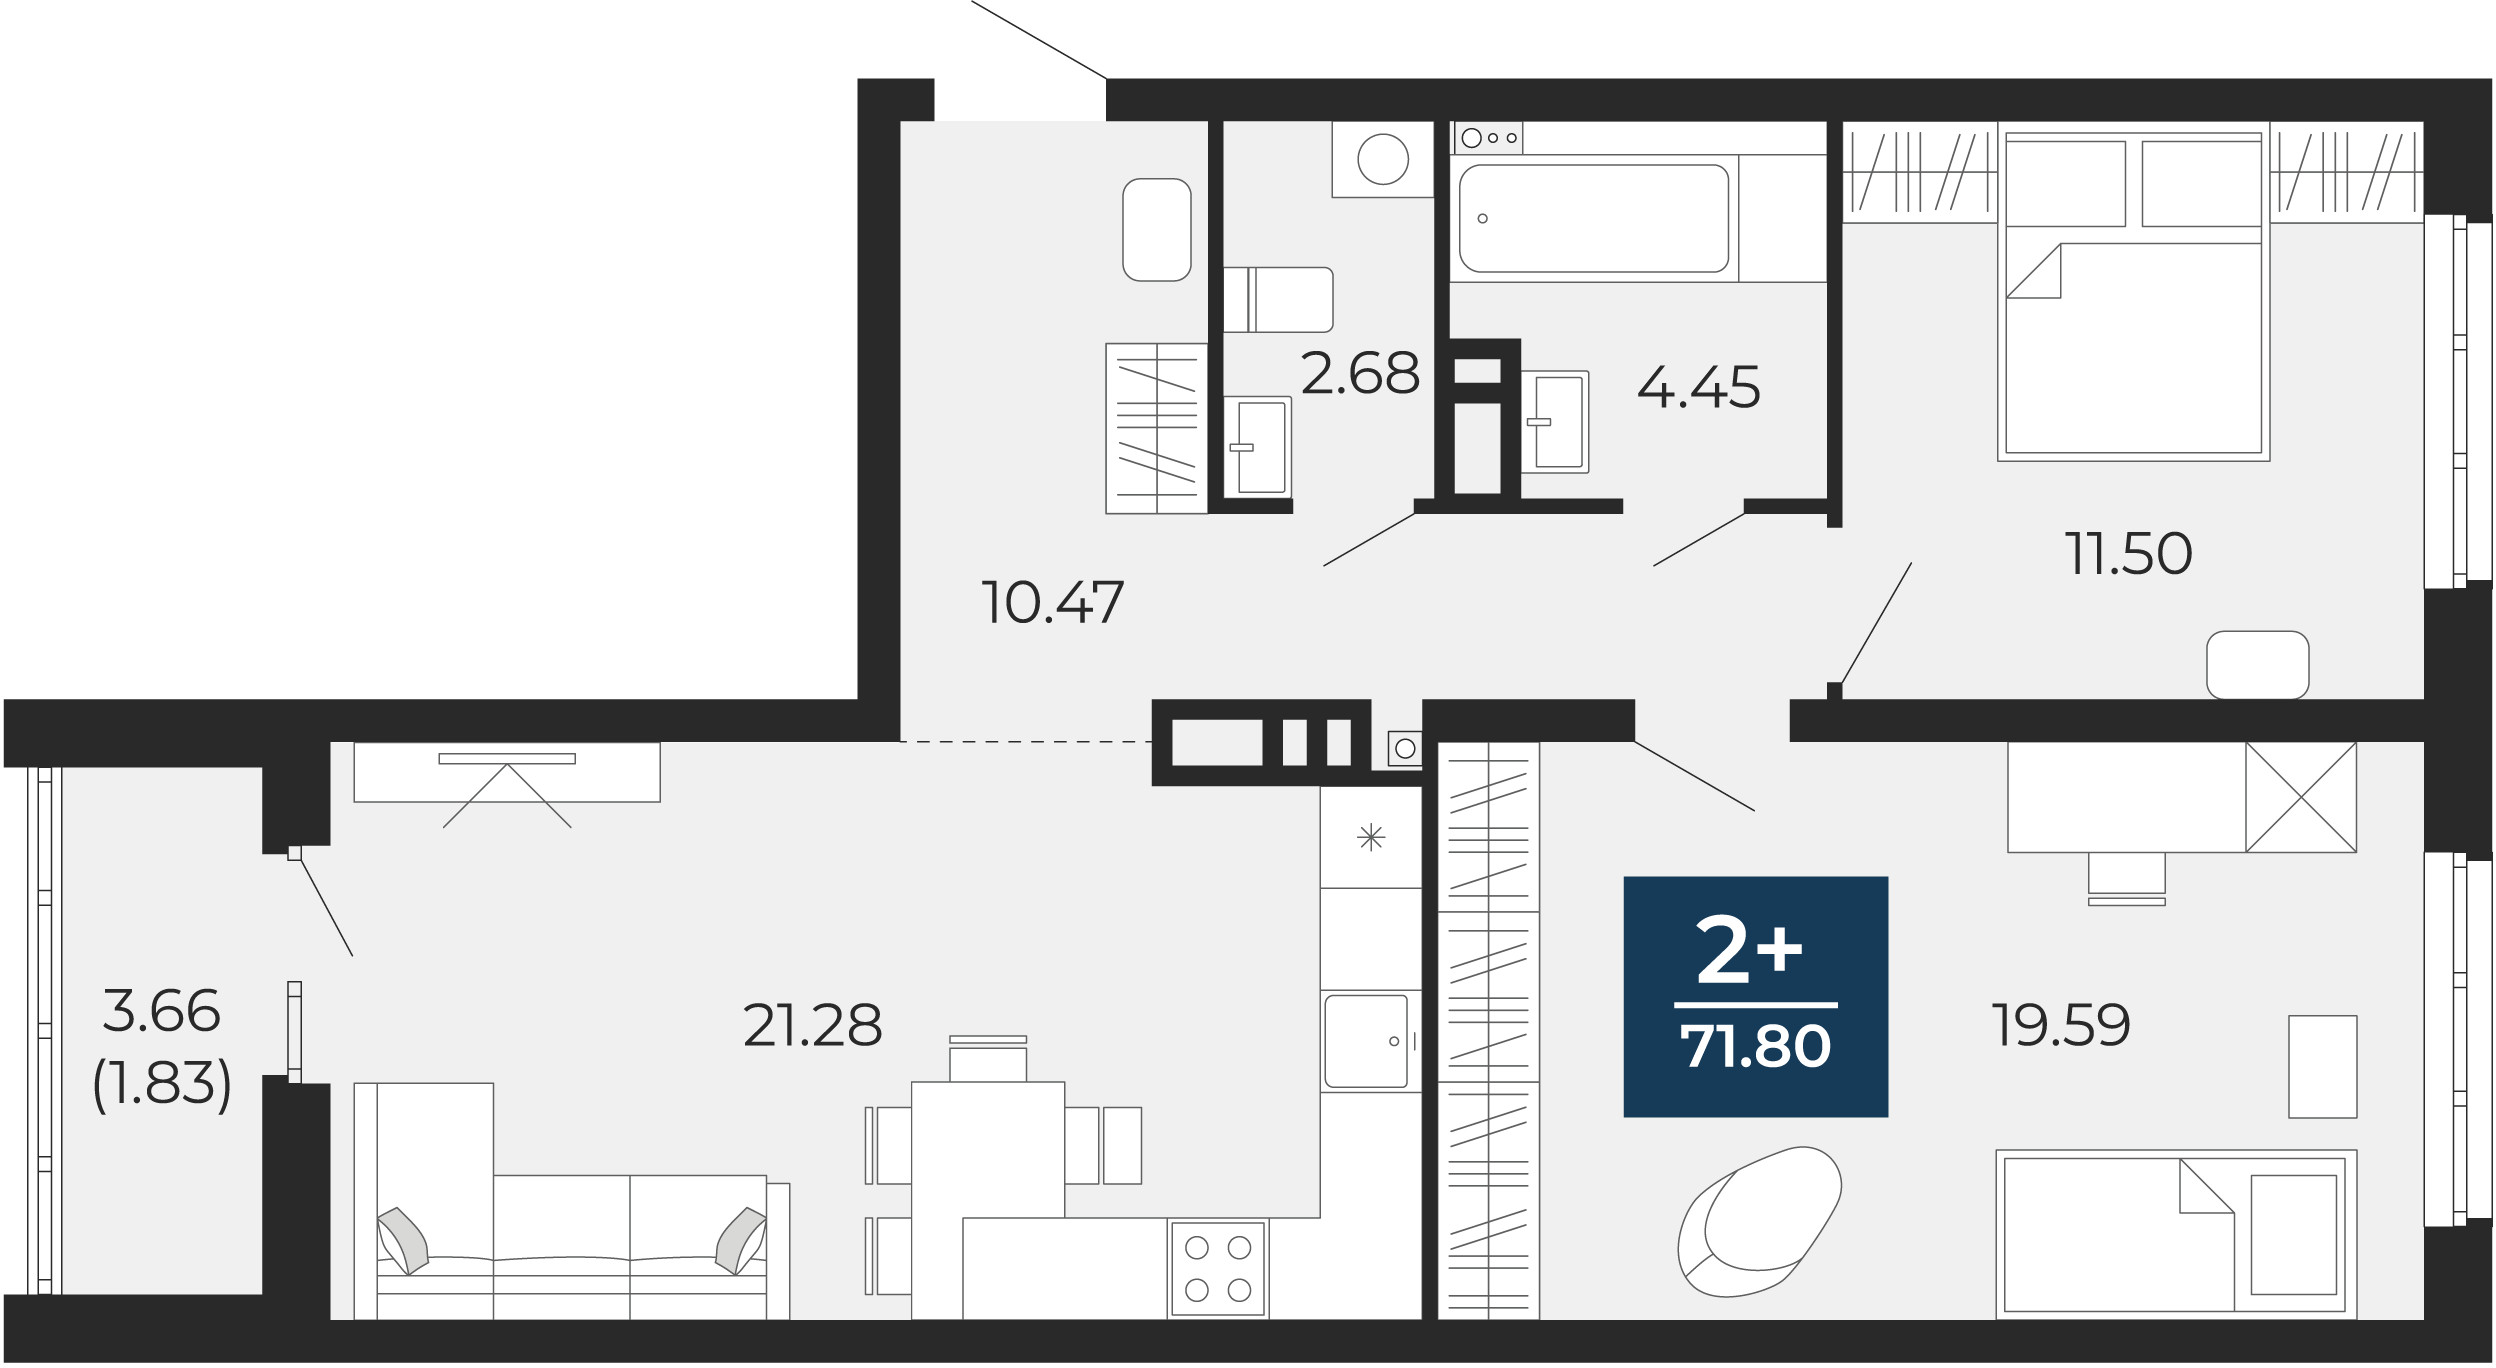 Квартира № 254, 2-комнатная, 71.8 кв. м, 8 этаж